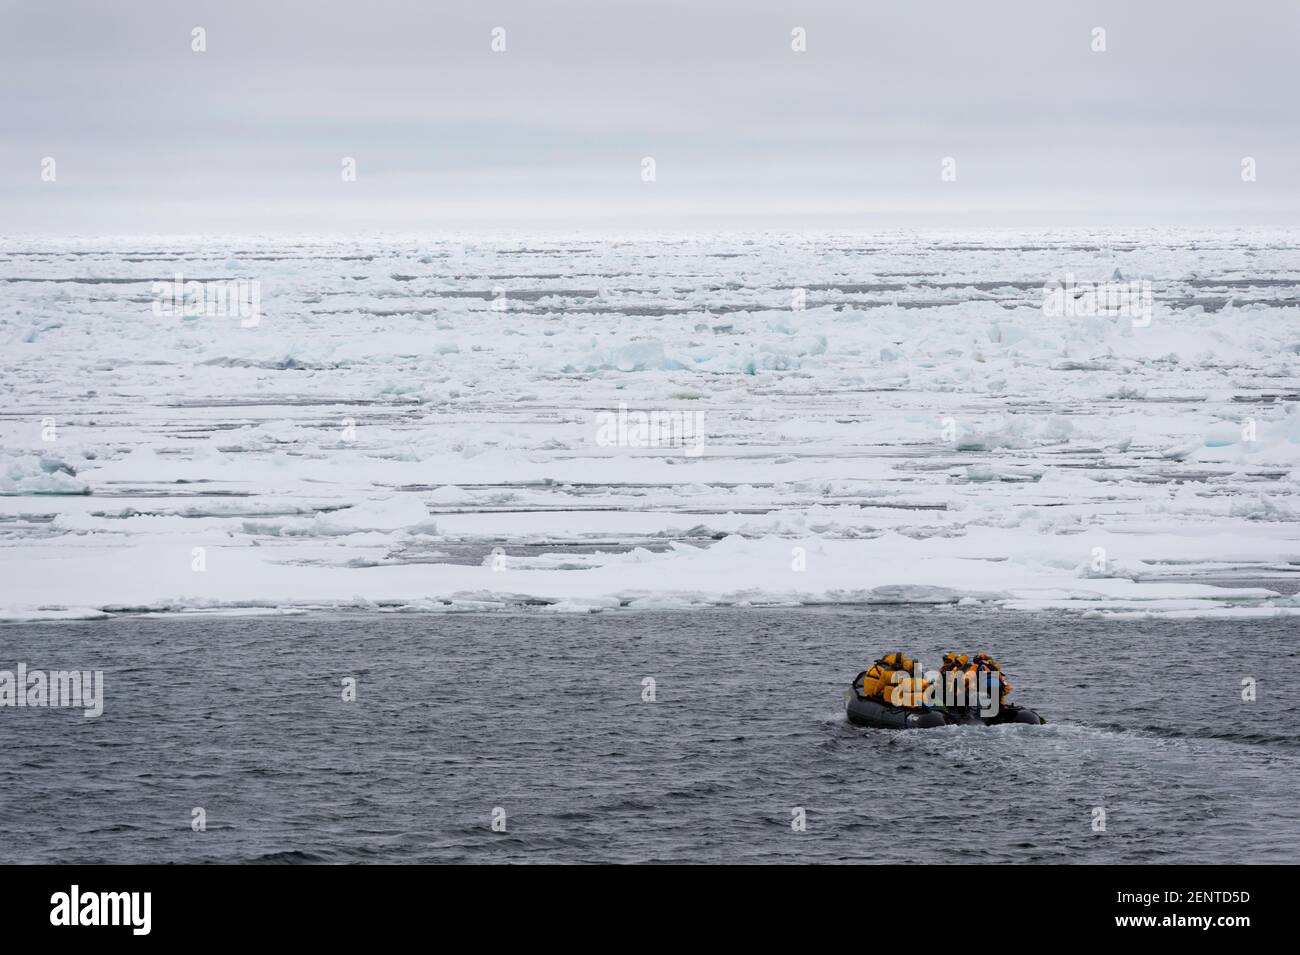 Touristes sur des bateaux gonflables explorant le Polar Ice Cap, 81au nord de Spitsbergen, Norvège. Banque D'Images